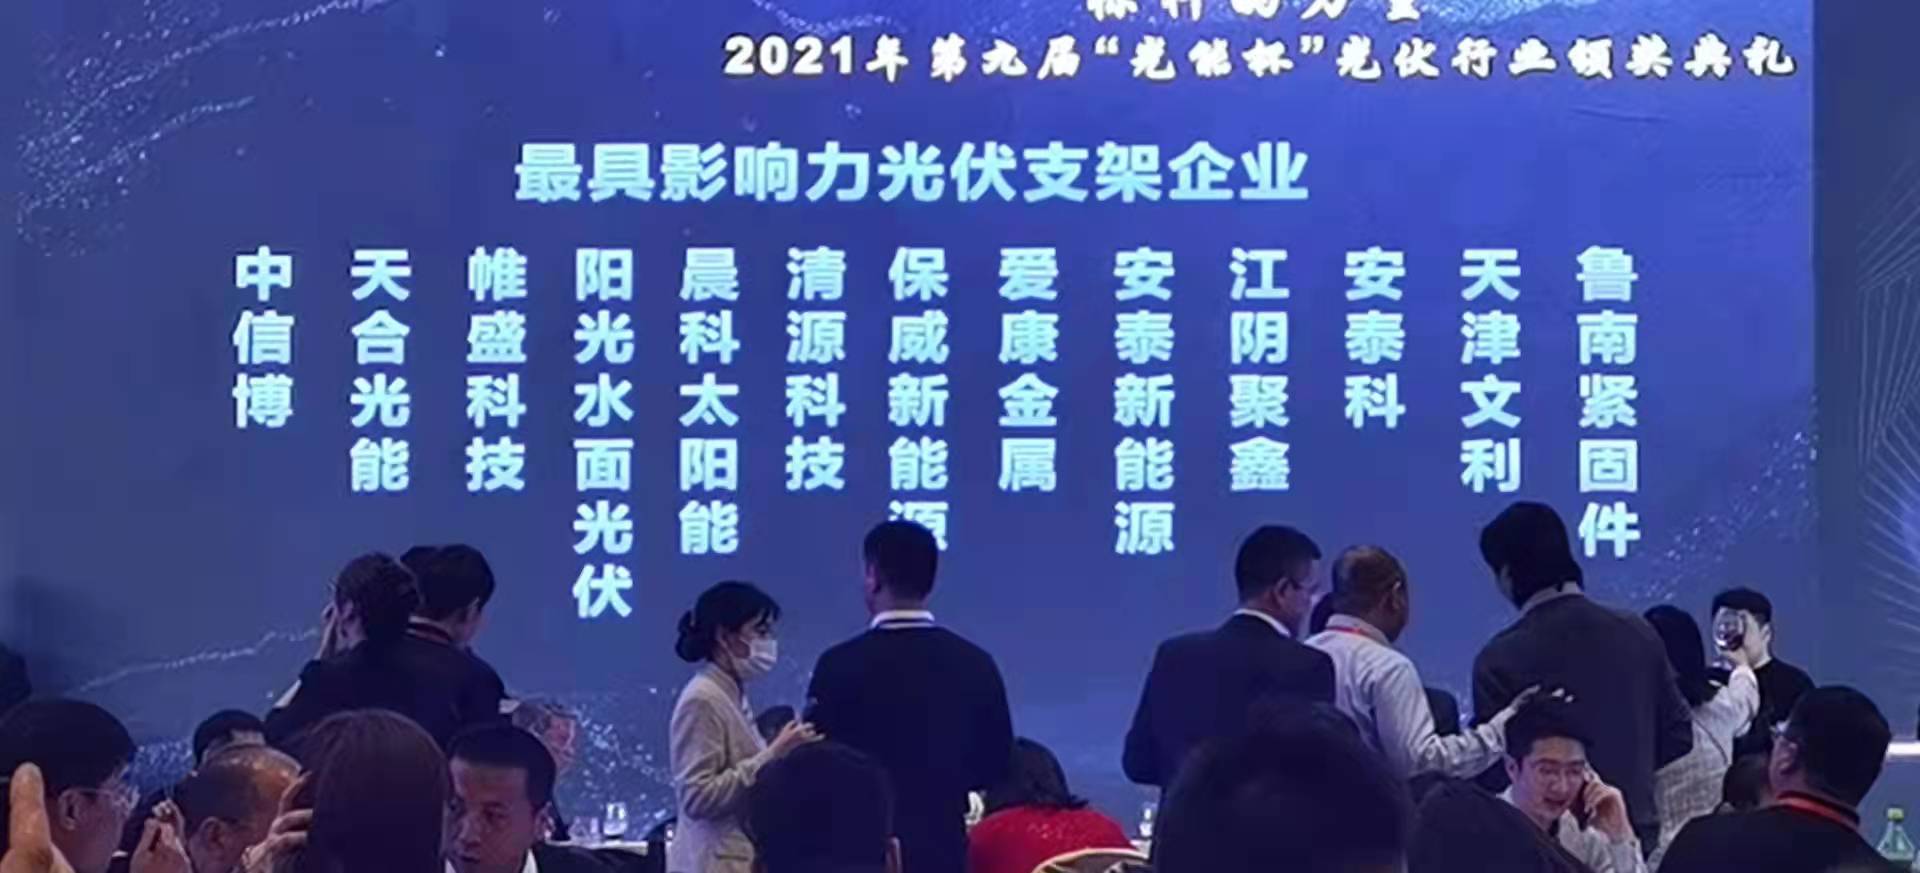 祝贺江阴聚鑫能源公司荣获2021光能杯最具影响力光伏支架及零配件企业2个奖项